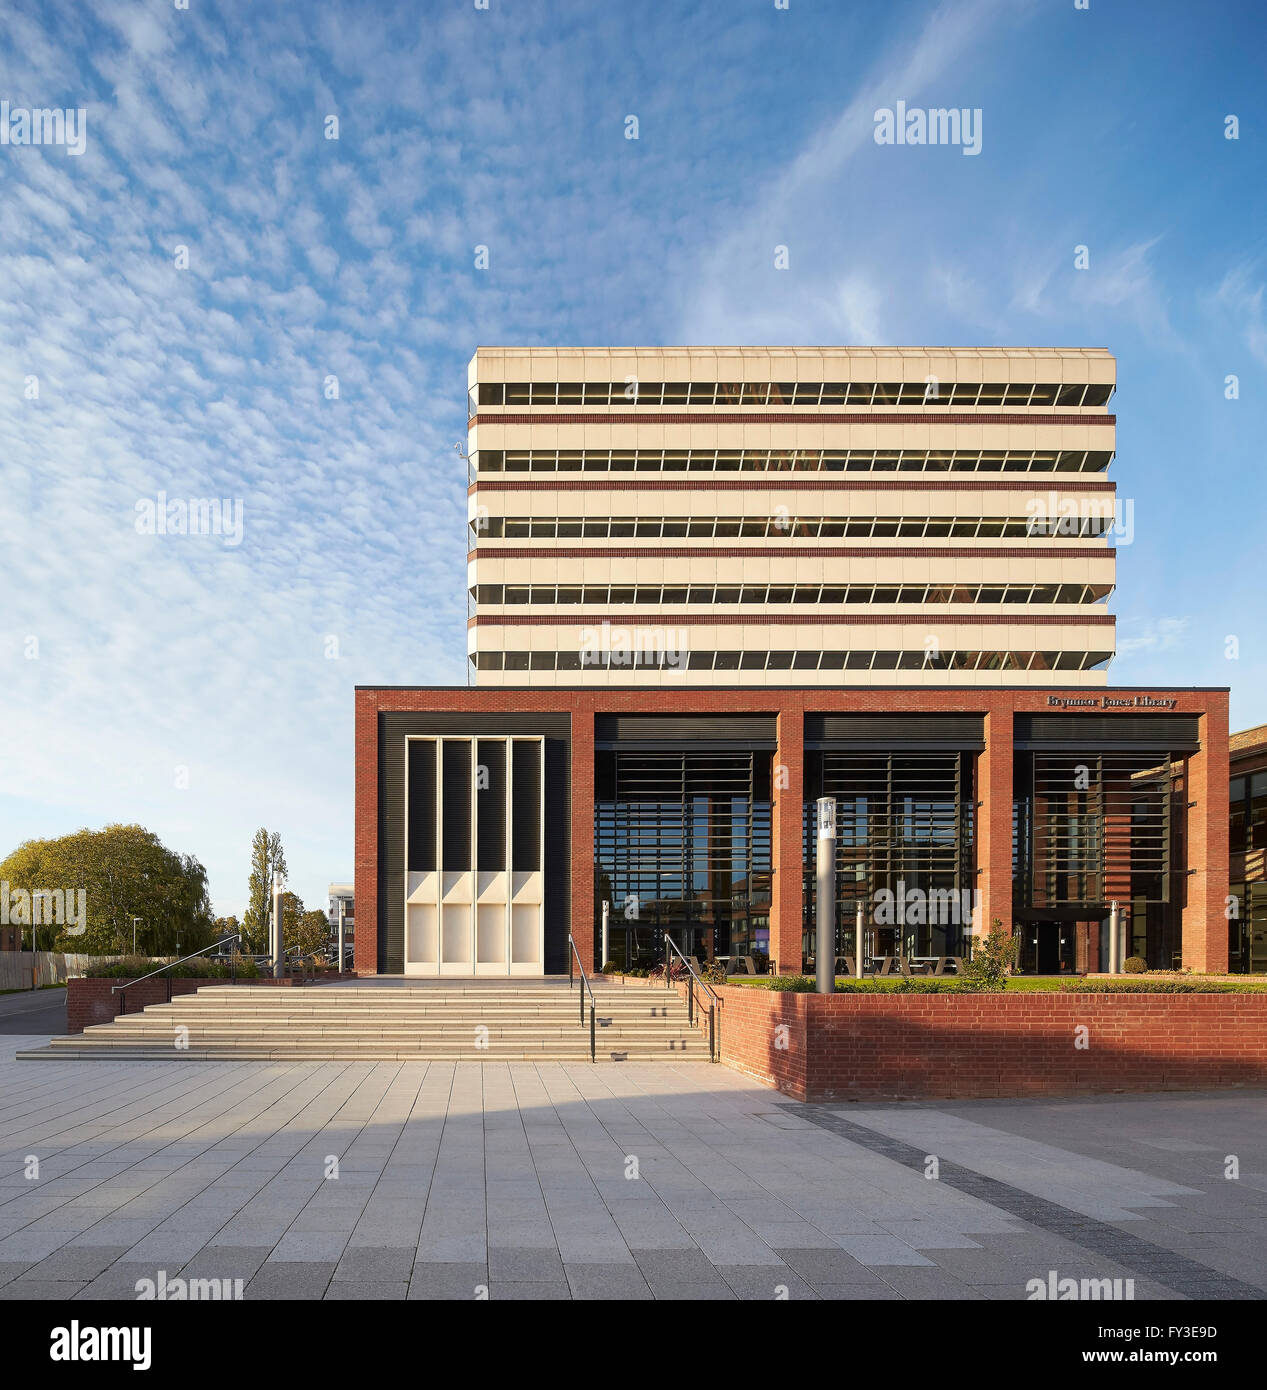 Élévation avant de nouvelle bibliothèque entrée avec bloc de construction brutaliste. Brynmor Jones Bibliothèque, Université de Hull, Hull, Royaume-Uni. Architecte : Sheppard Robson, 2015. Banque D'Images